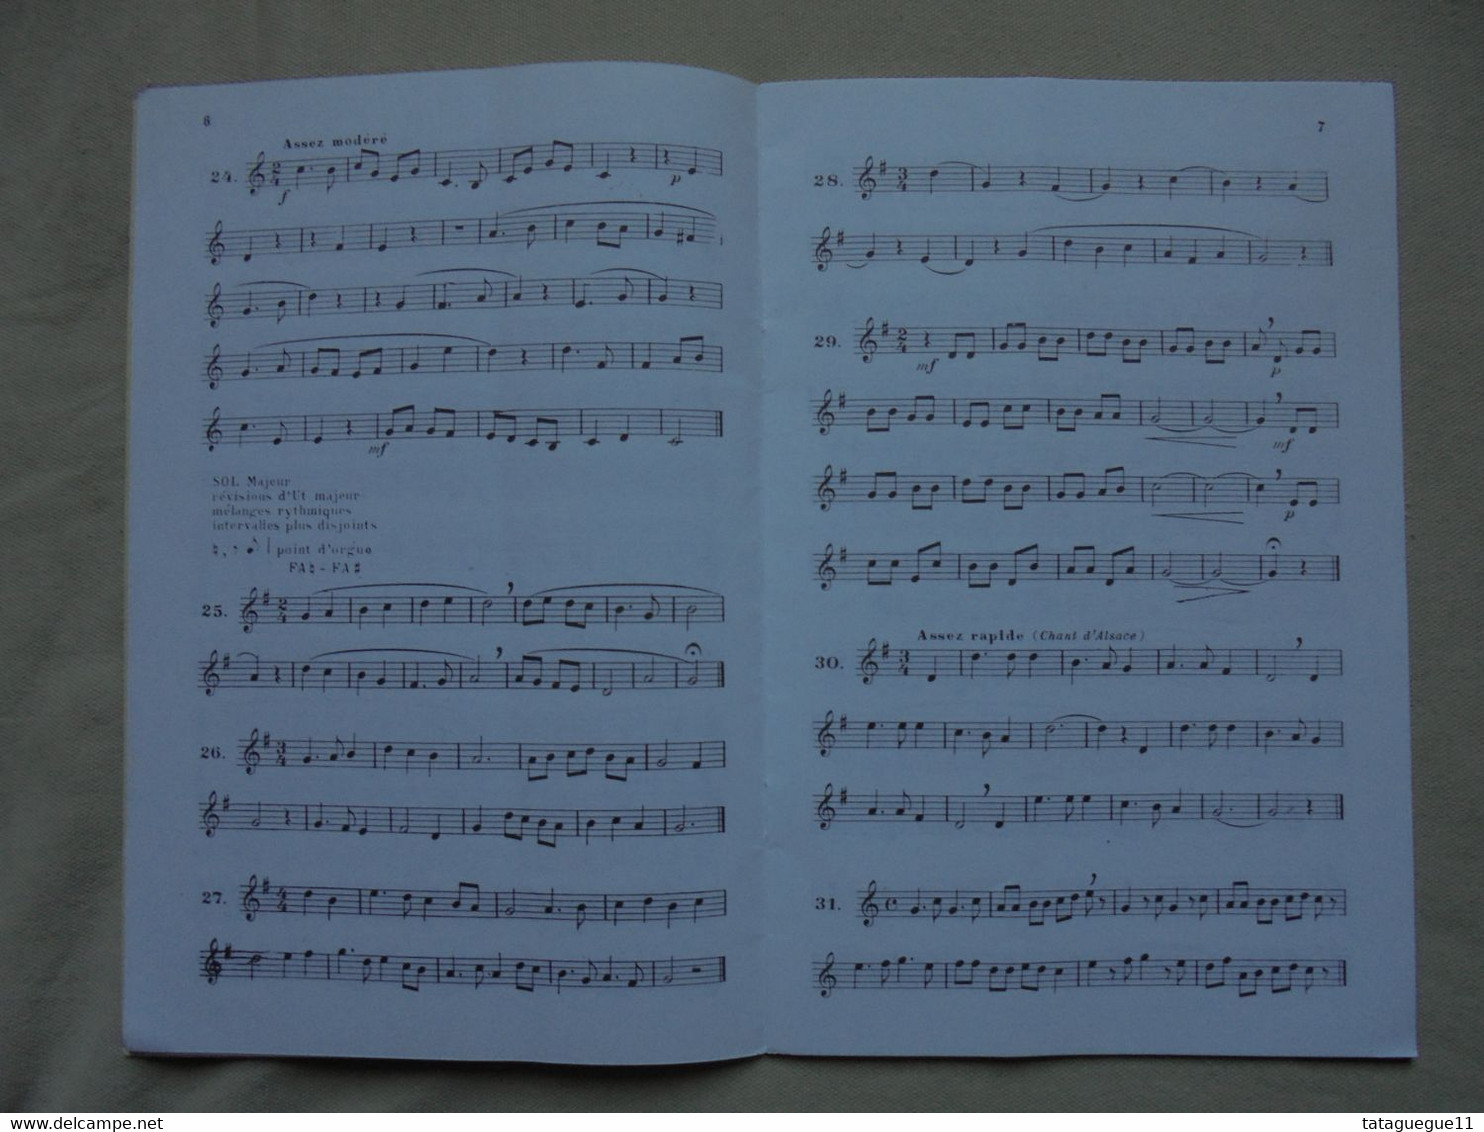 Ancien - Livret Solfège Mélodique 100 Leçons Par Henri Bert Degré Préparatoire - Opera